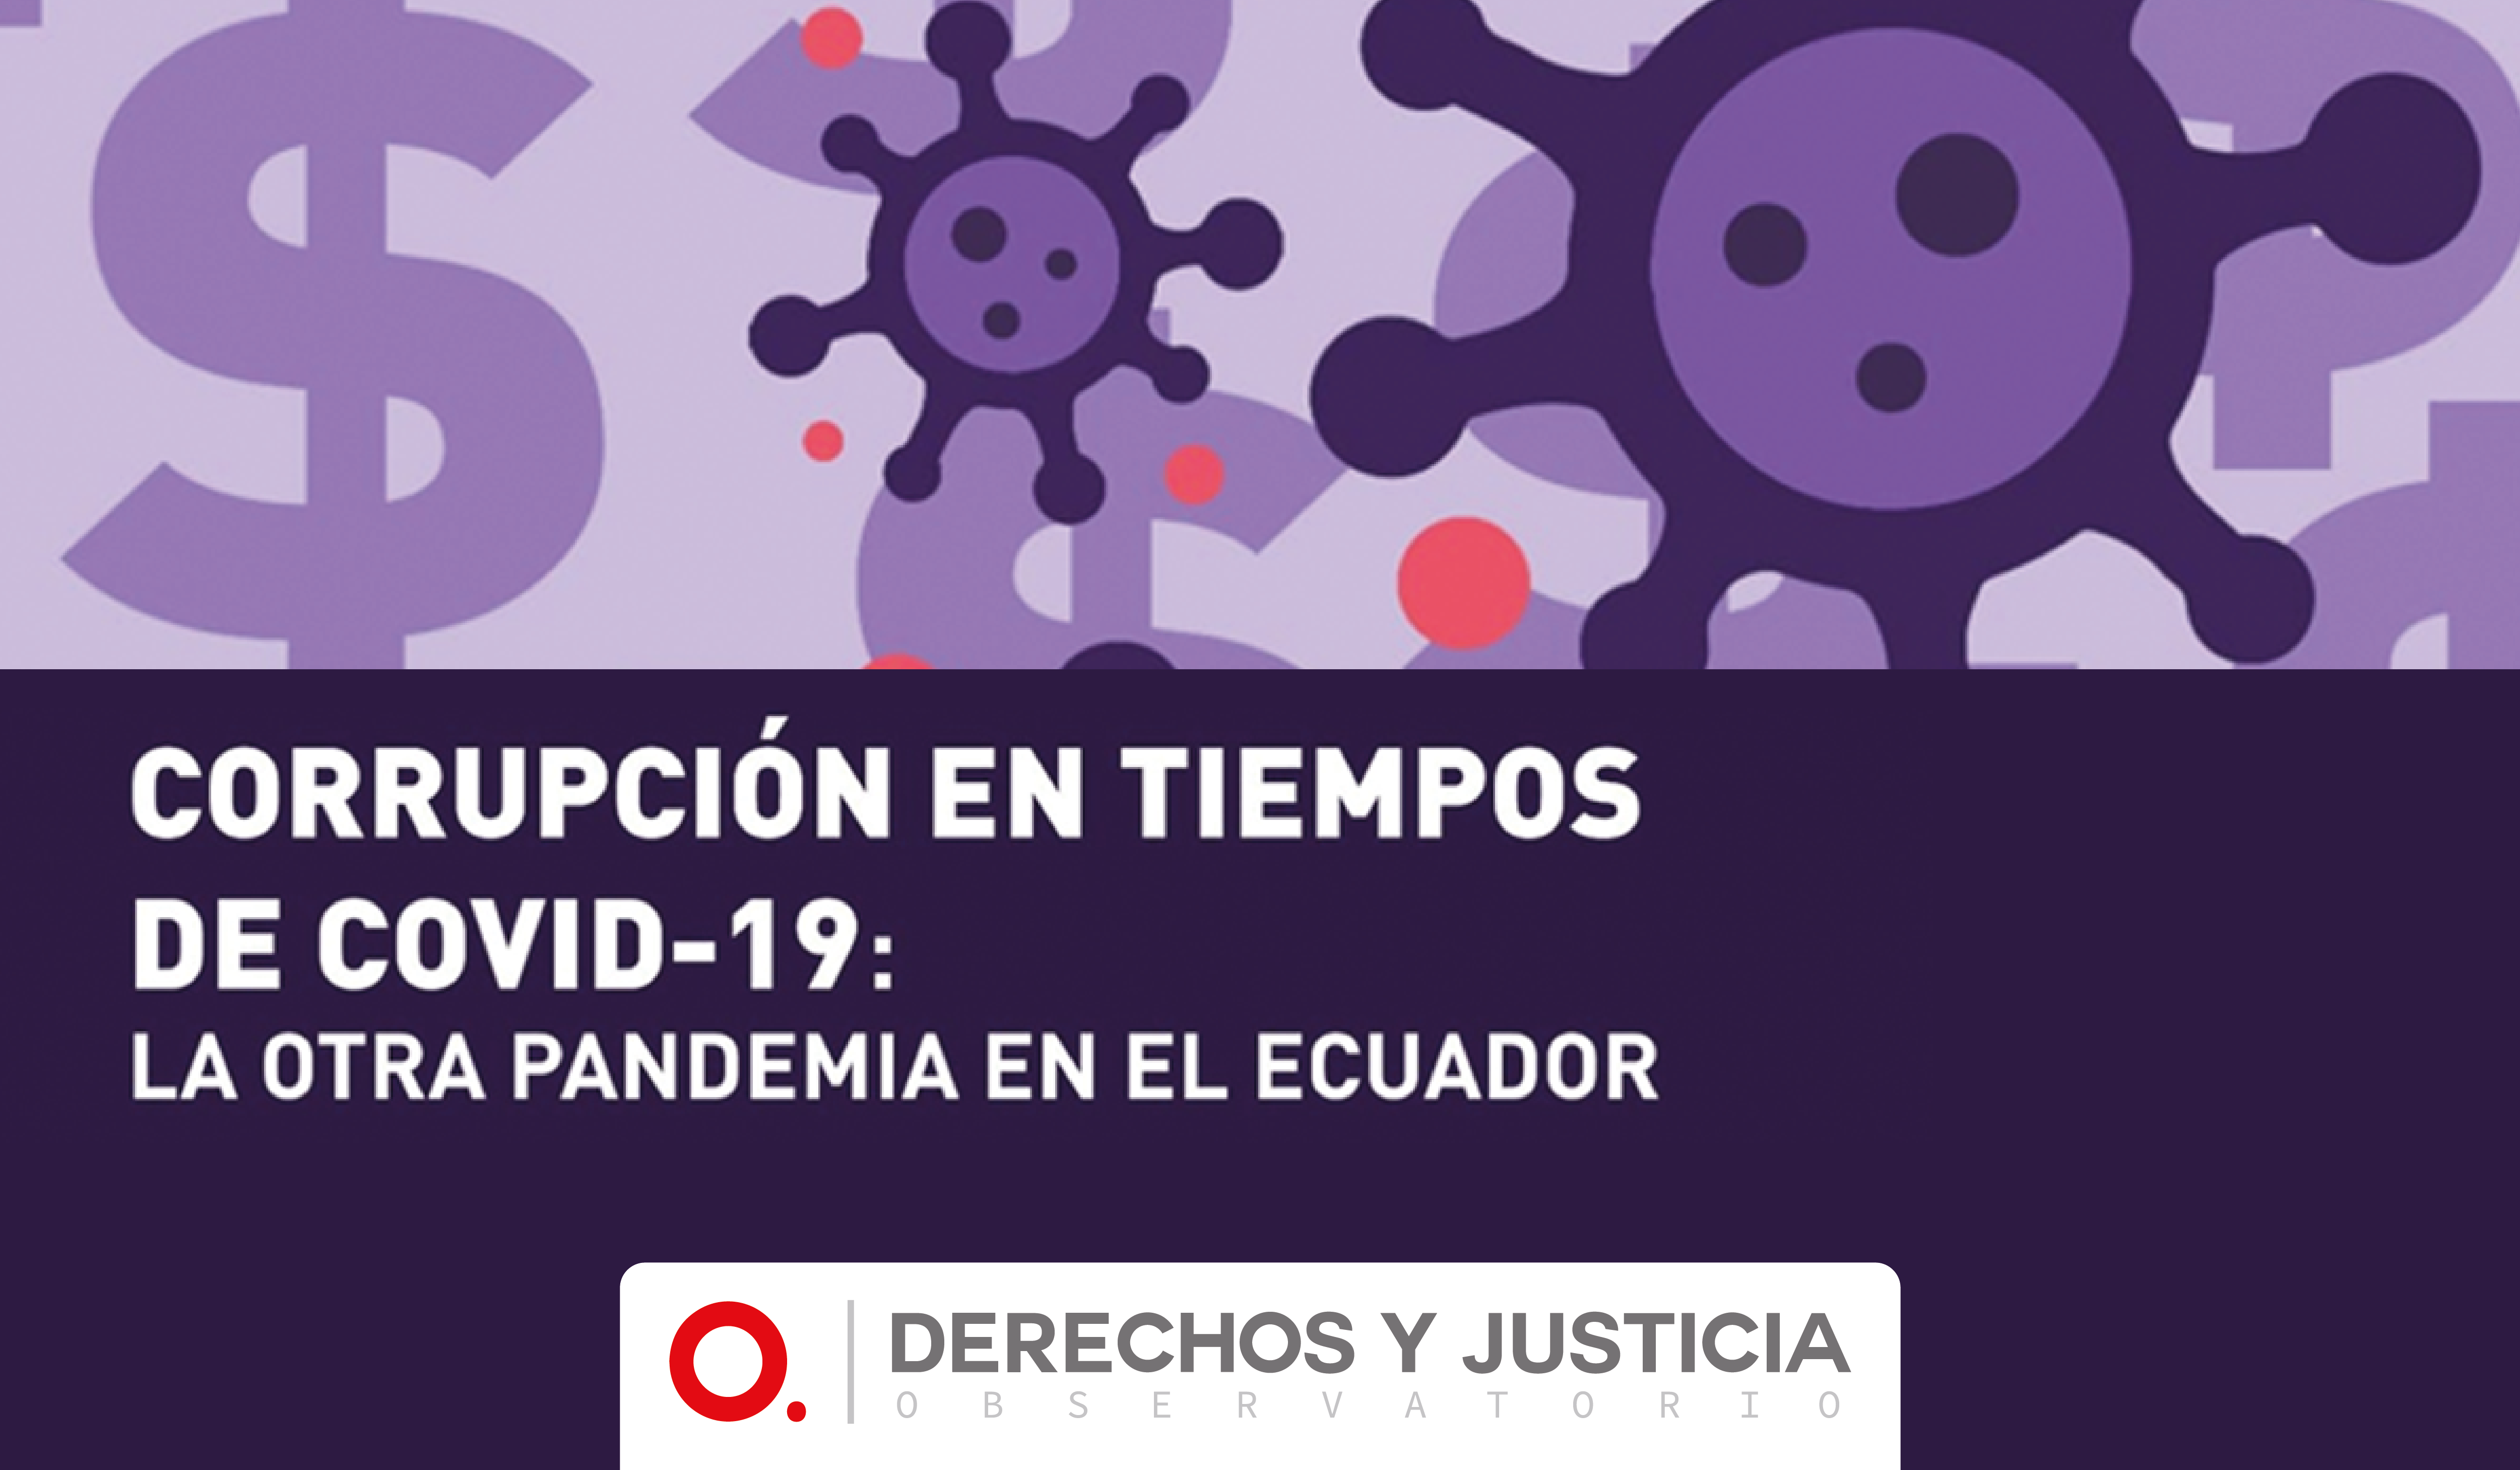 CORRUPCIÓN EN TIEMPOS DE COVID-19: LA OTRA PANDEMIA EN ECUADOR